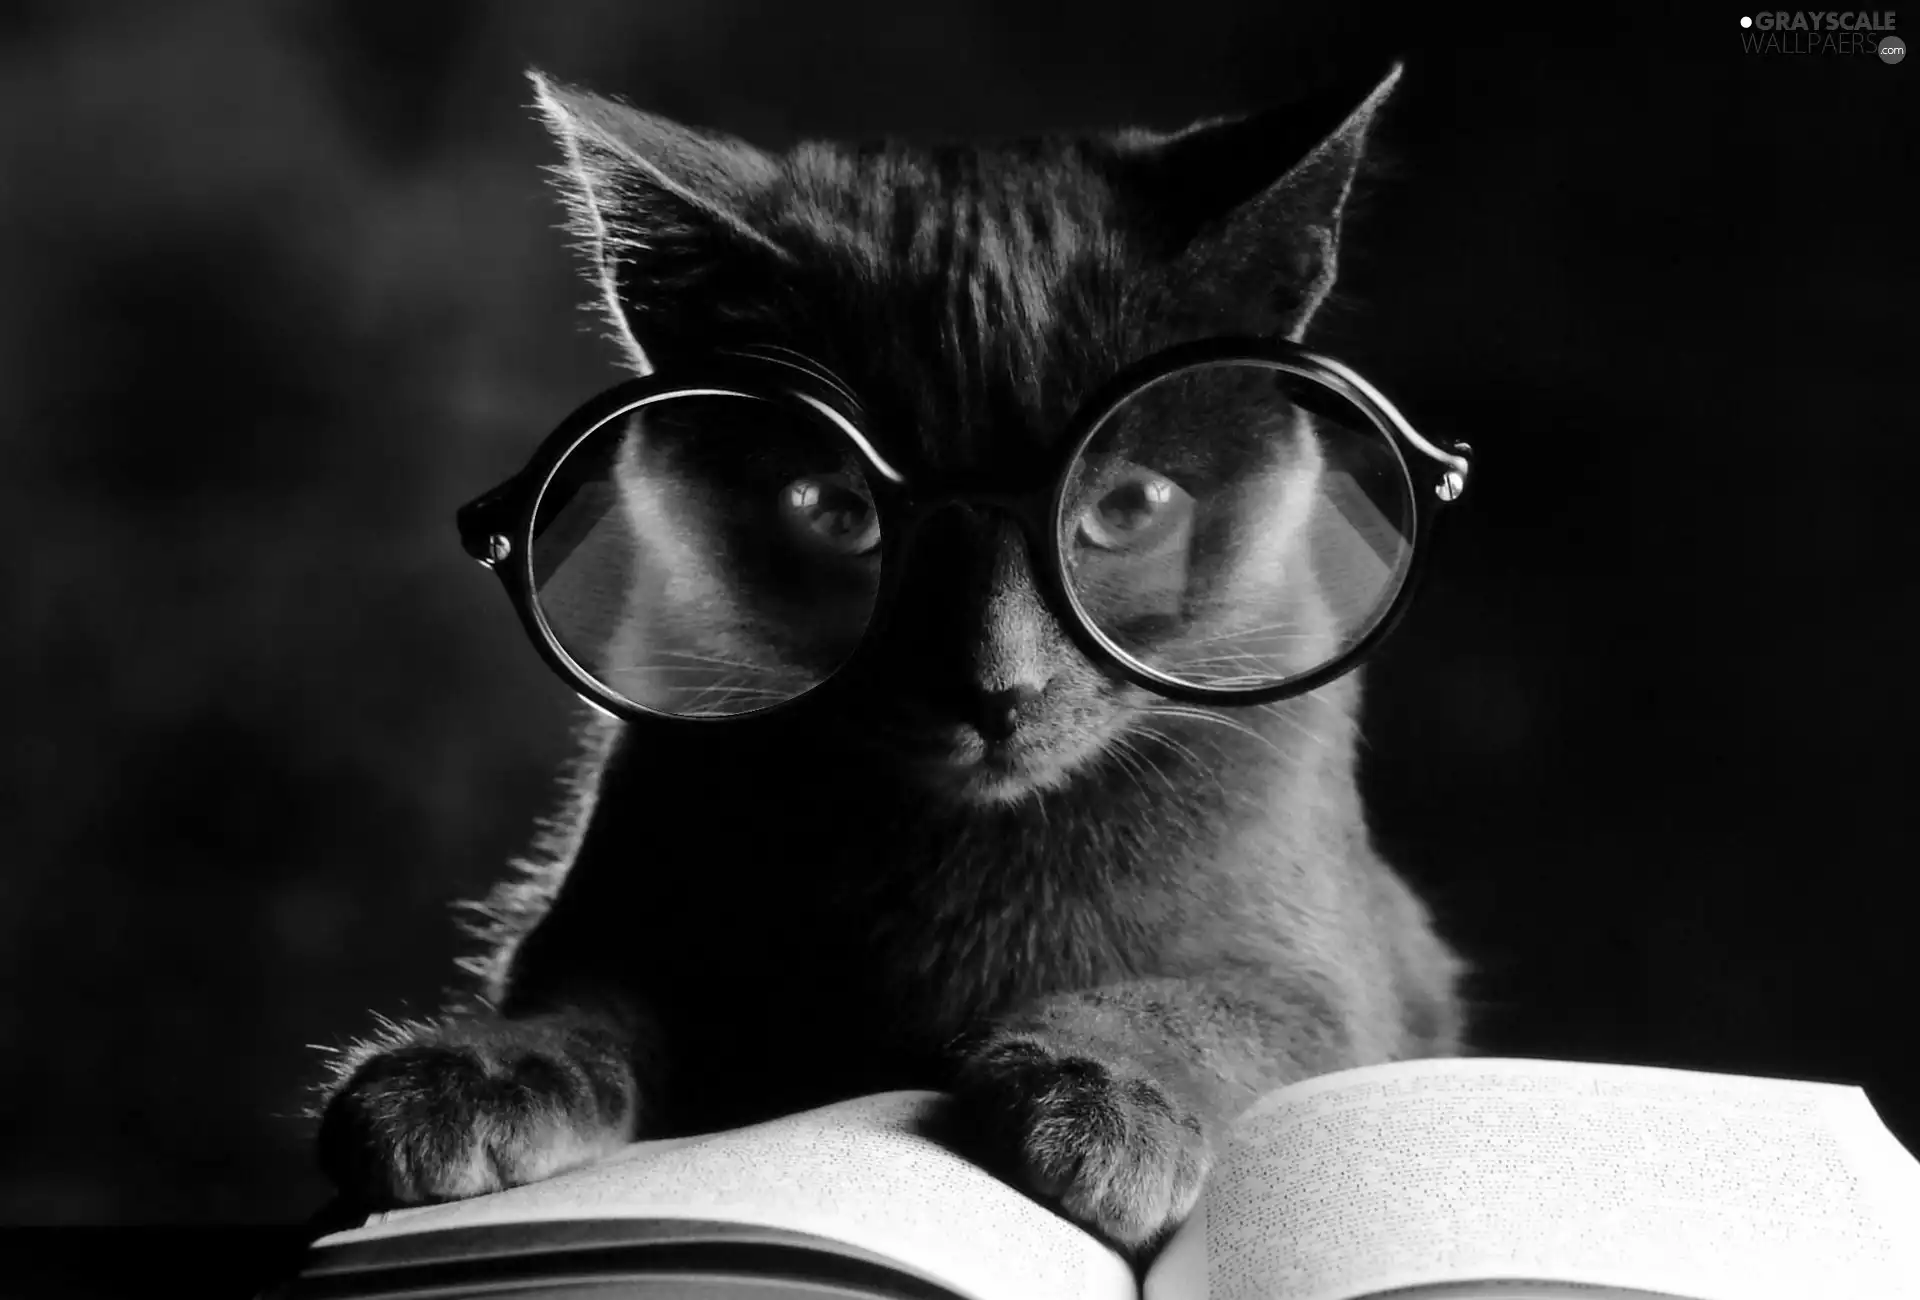 Book, kitten, Glasses